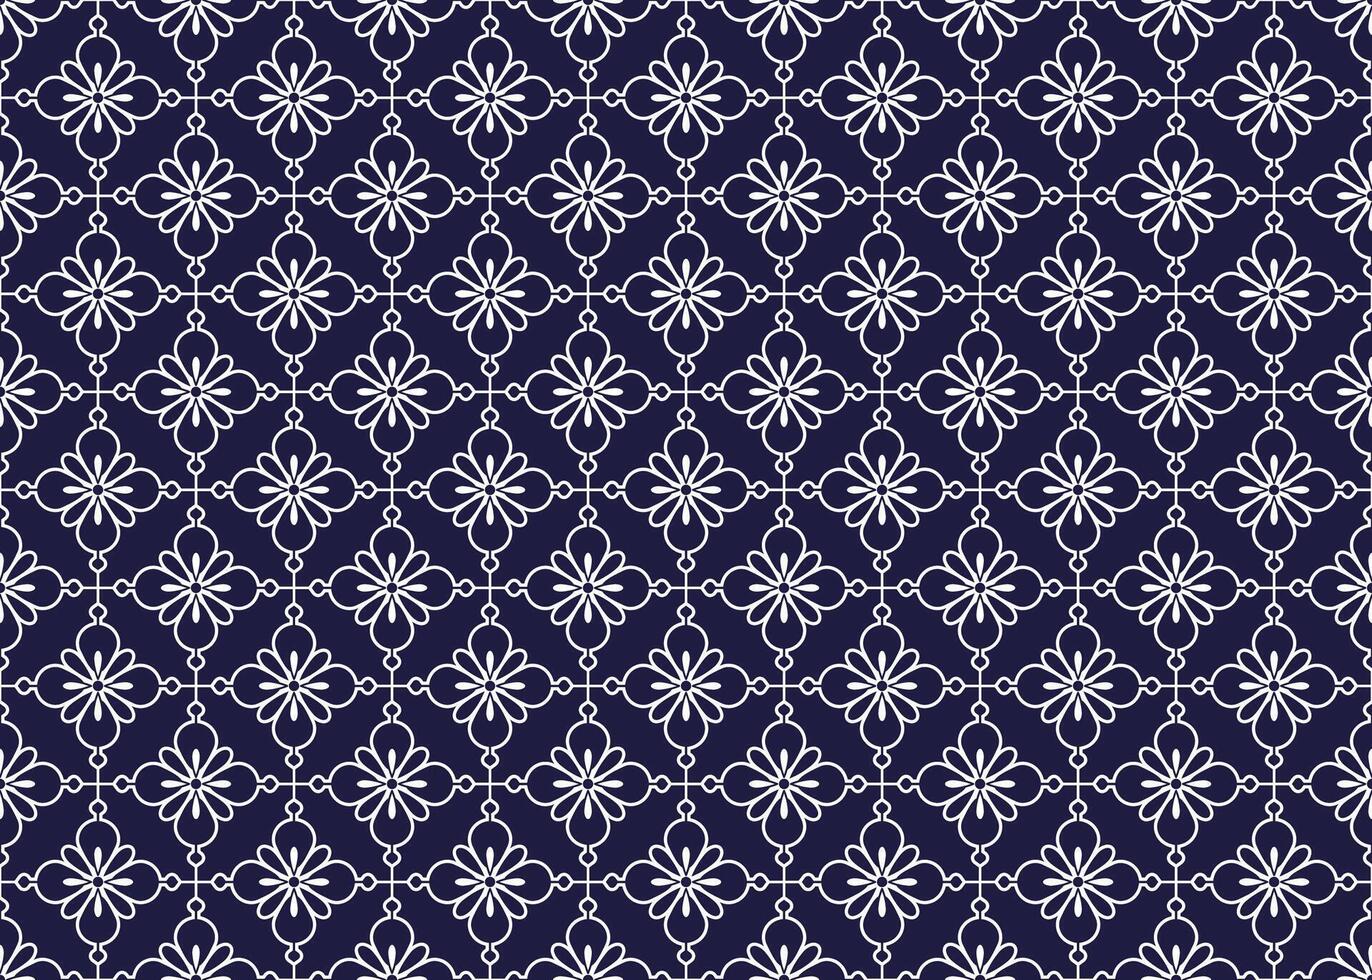 Symbol geometrisch Weiß Linie Blumen auf dunkel Blau Hintergrund nahtlos Muster zum Stoff Teppich Hintergrund Verpackung usw. vektor